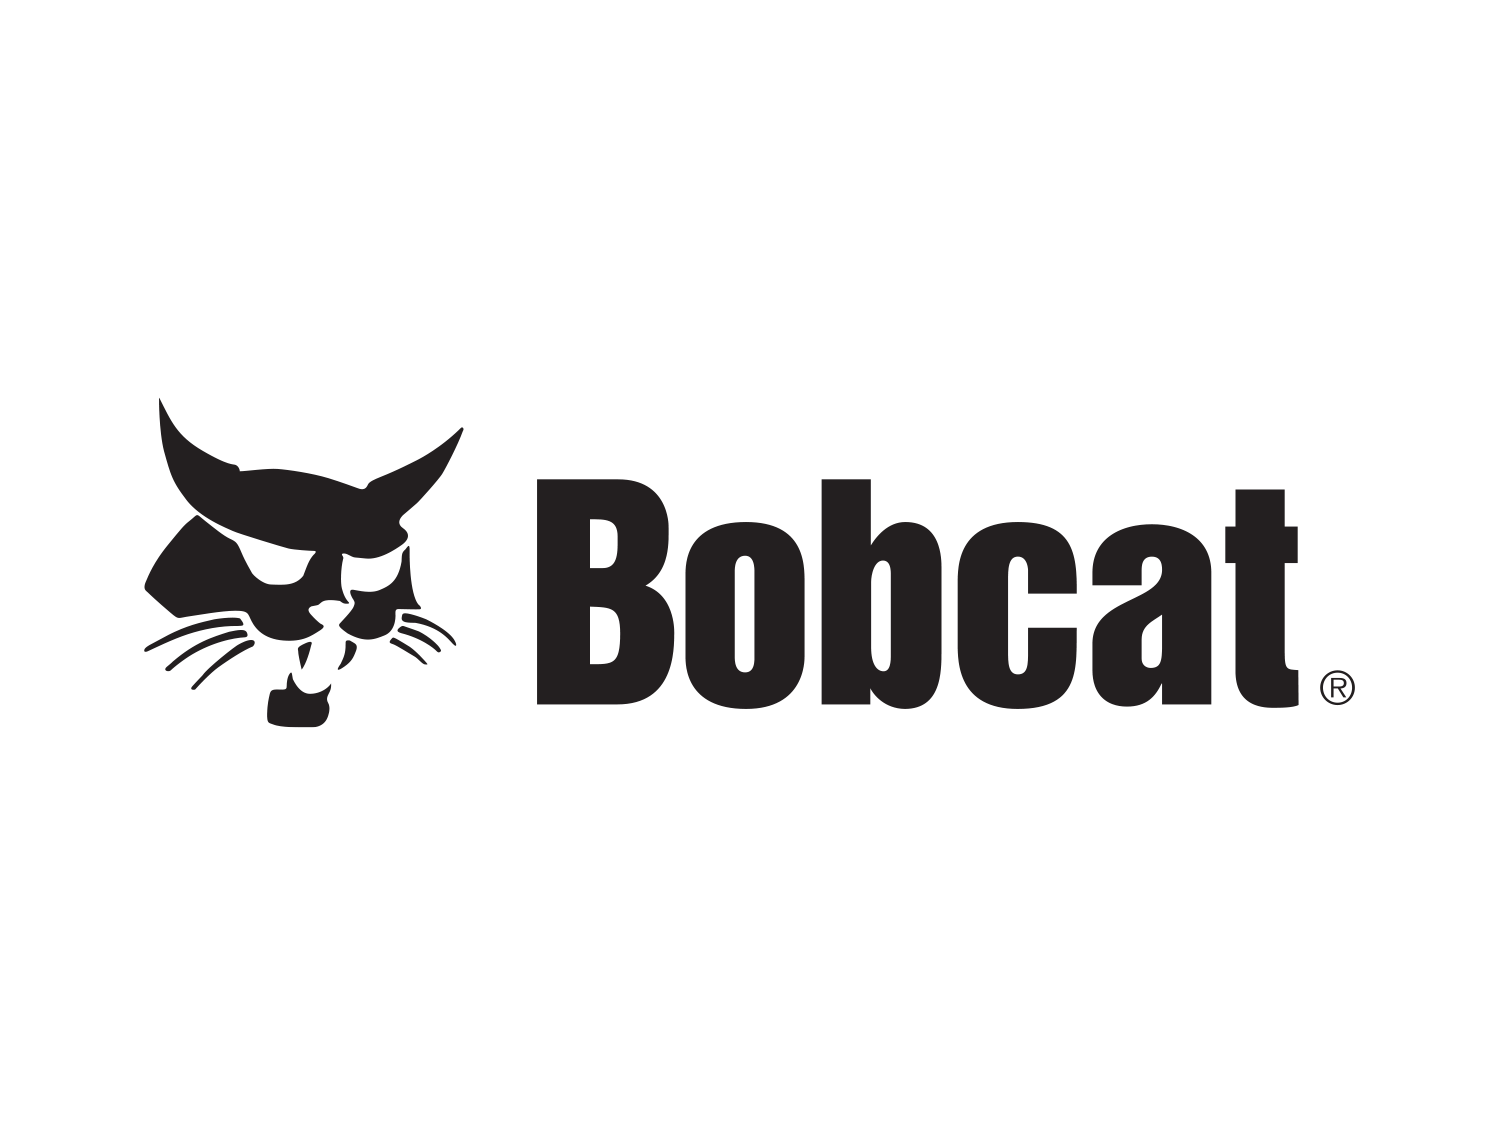 Bobcat Industrial Air - California, Nevada, Hawaii